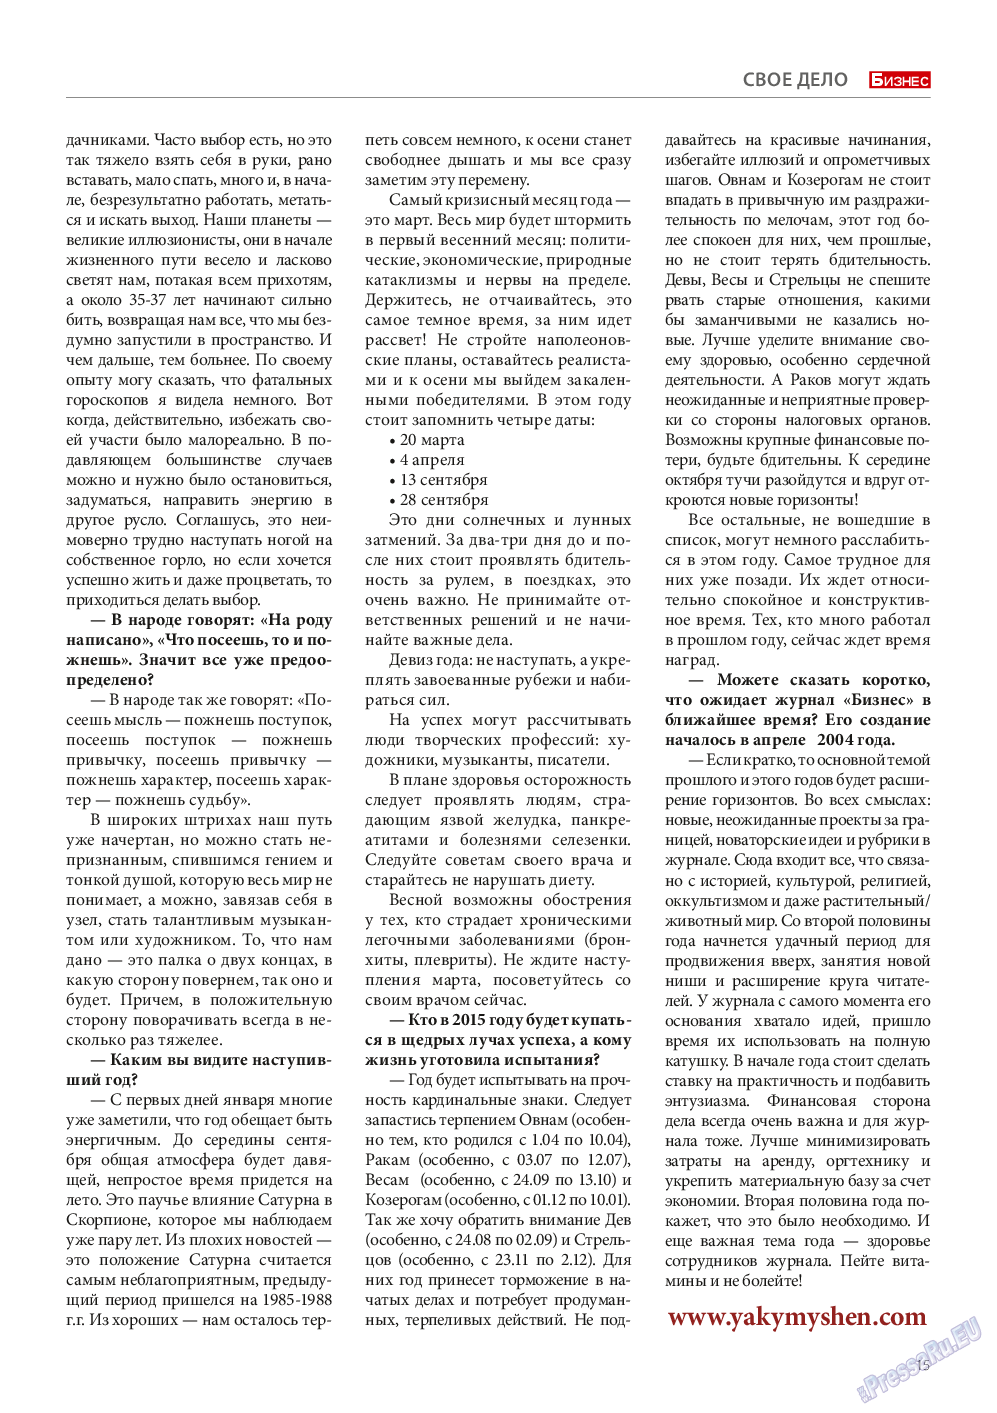 Бизнес, журнал. 2015 №5 стр.15